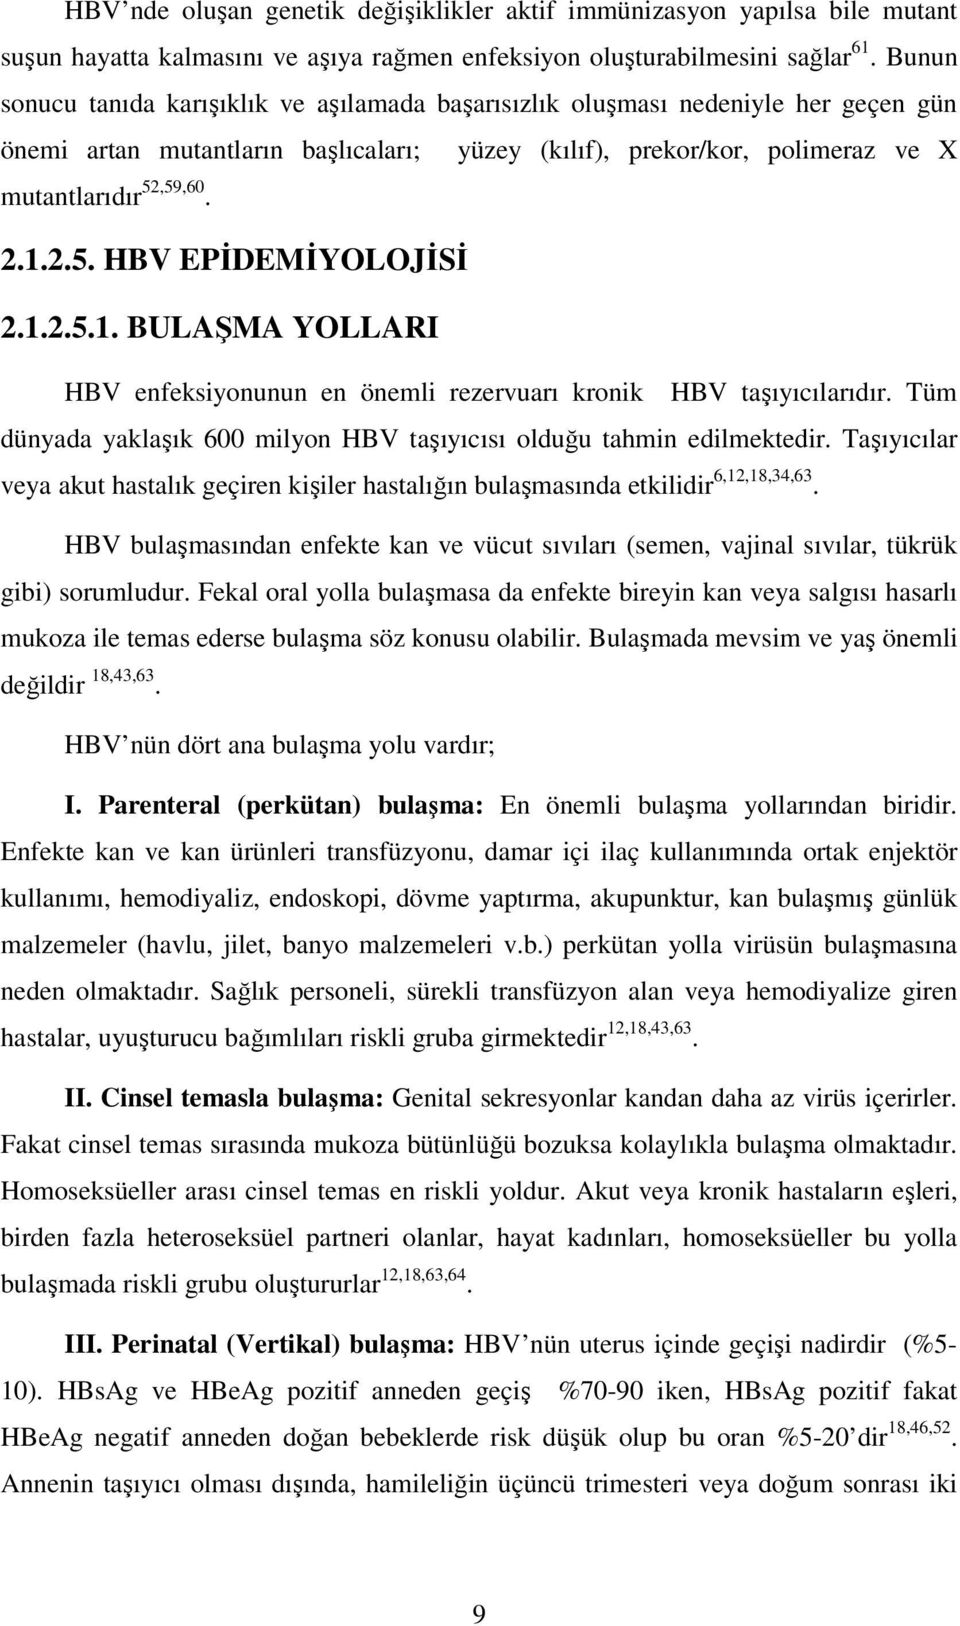 ,59,60. 2.1.2.5. HBV EPİDEMİYOLOJİSİ 2.1.2.5.1. BULAŞMA YOLLARI HBV enfeksiyonunun en önemli rezervuarı kronik HBV taşıyıcılarıdır.